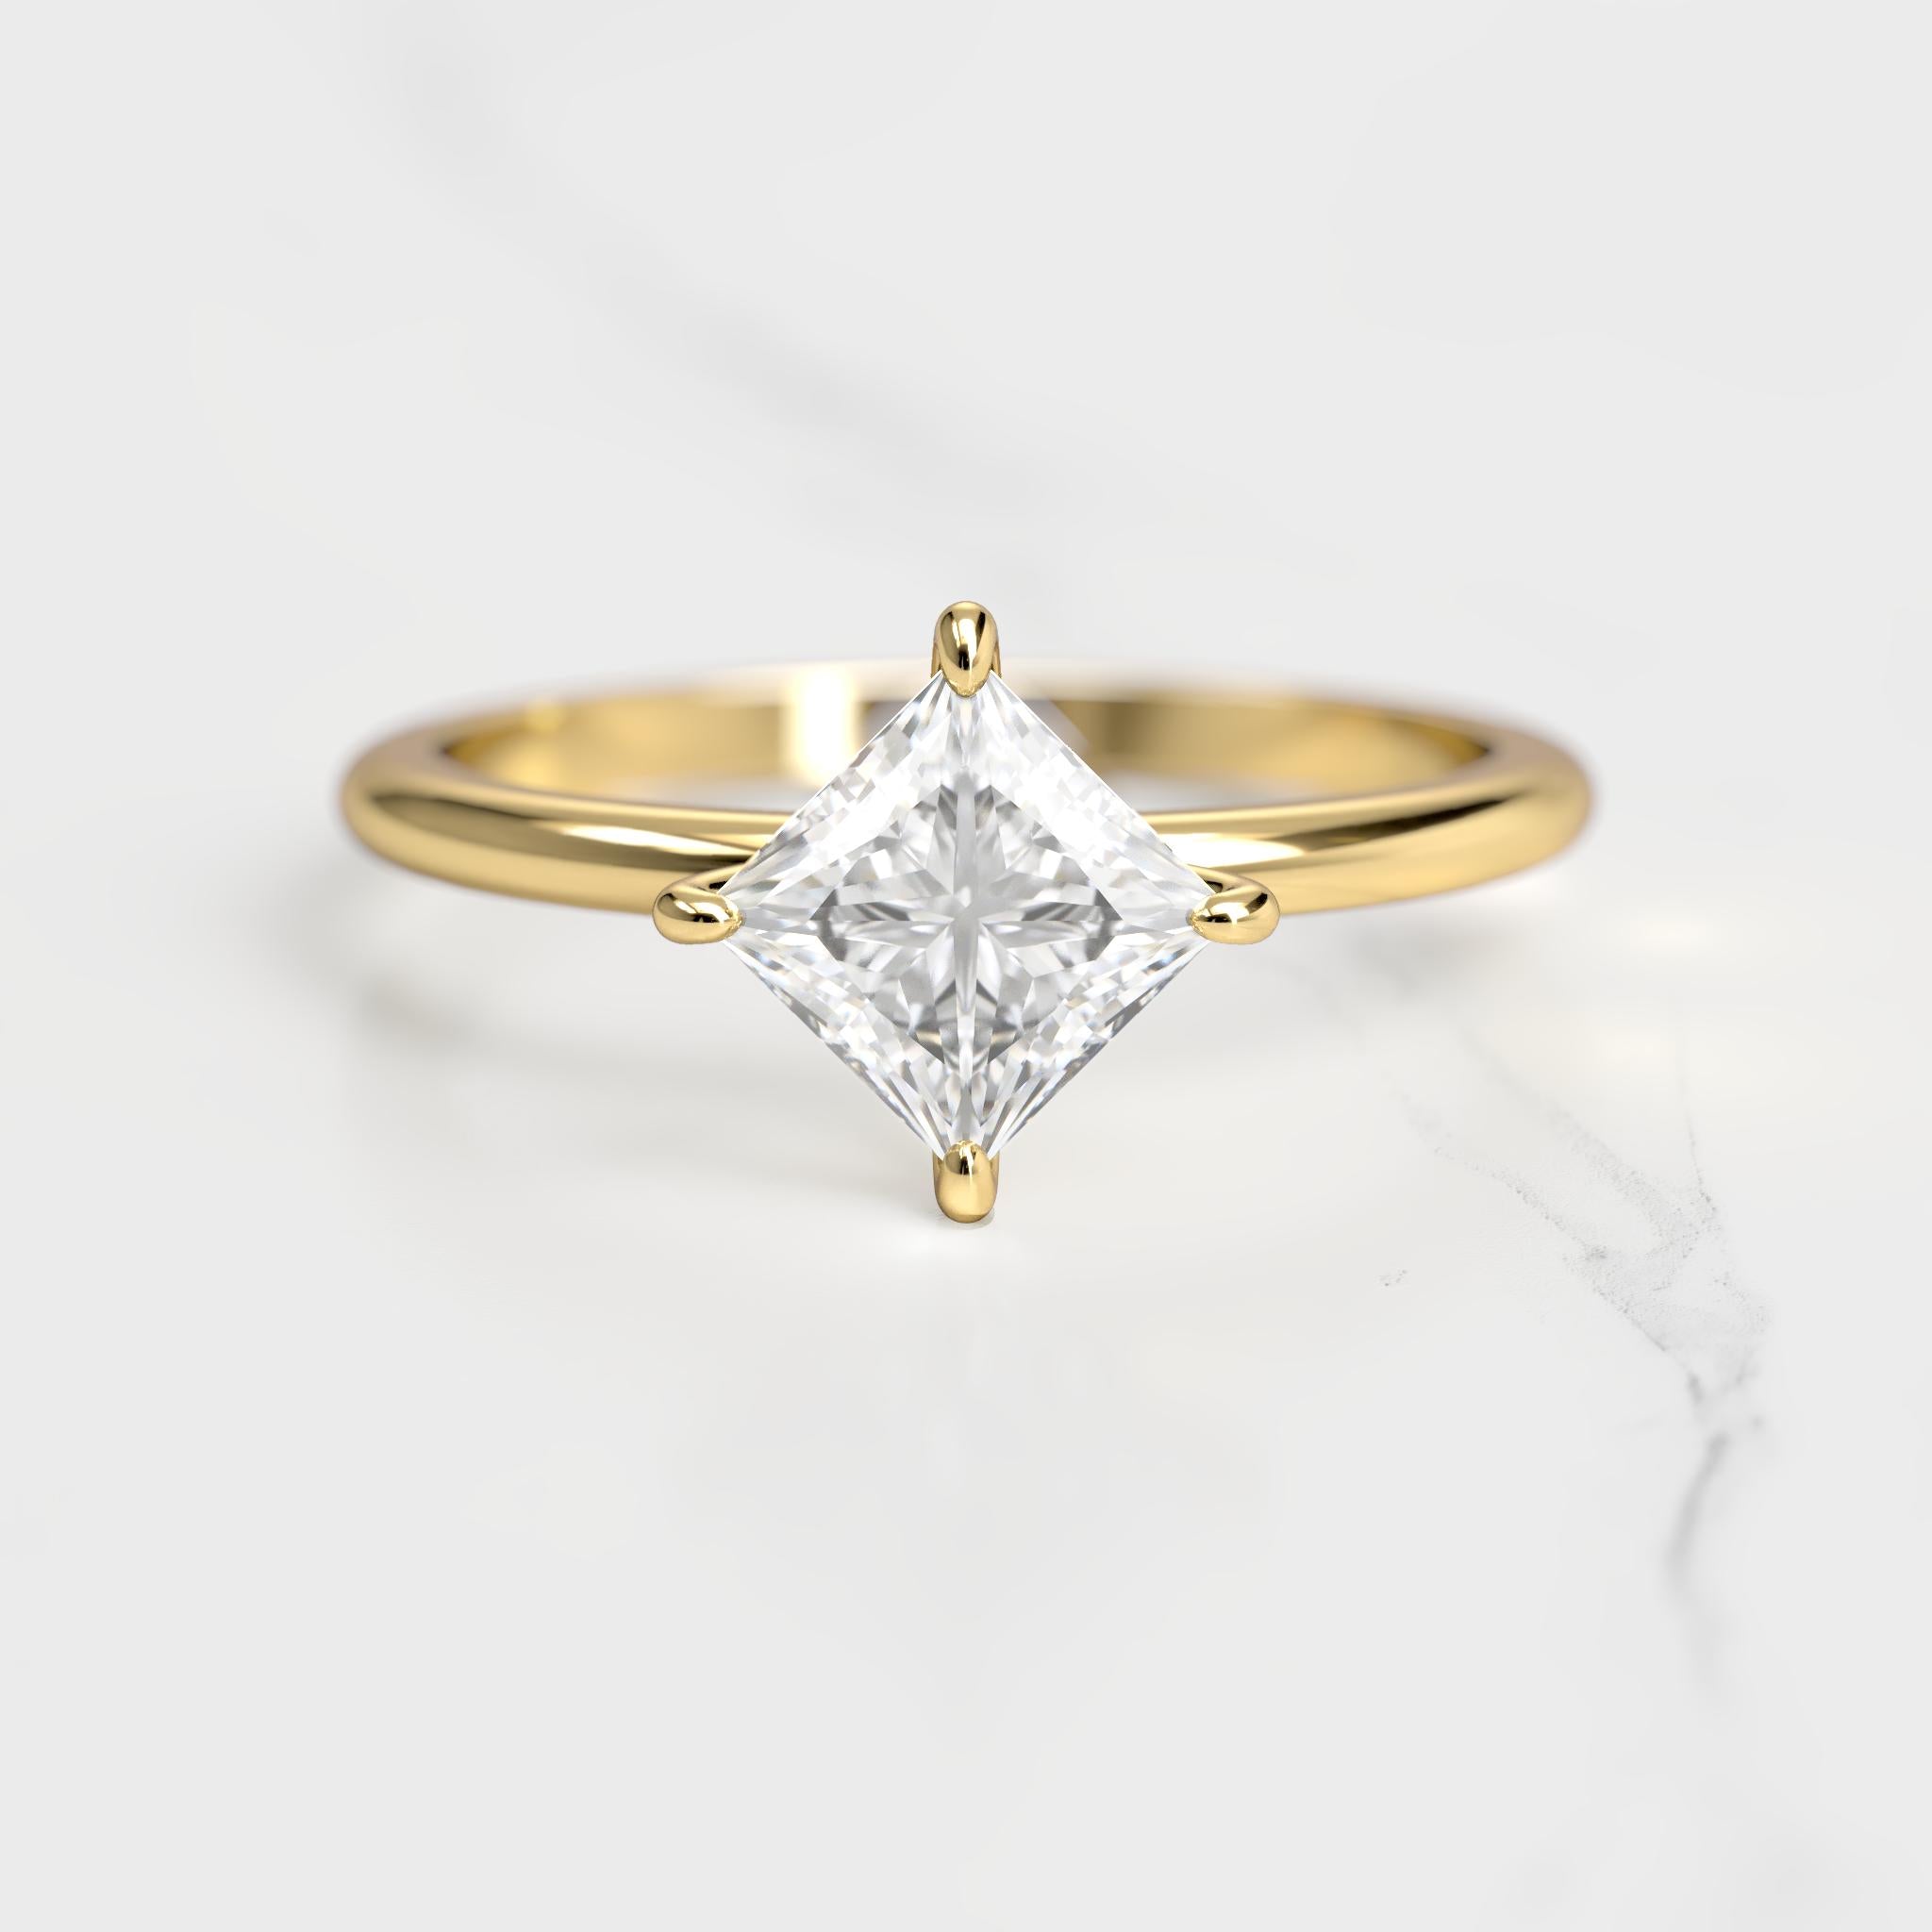 Princess Solitaire Diamond Ring - 18k white gold / 1ct / lab diamond